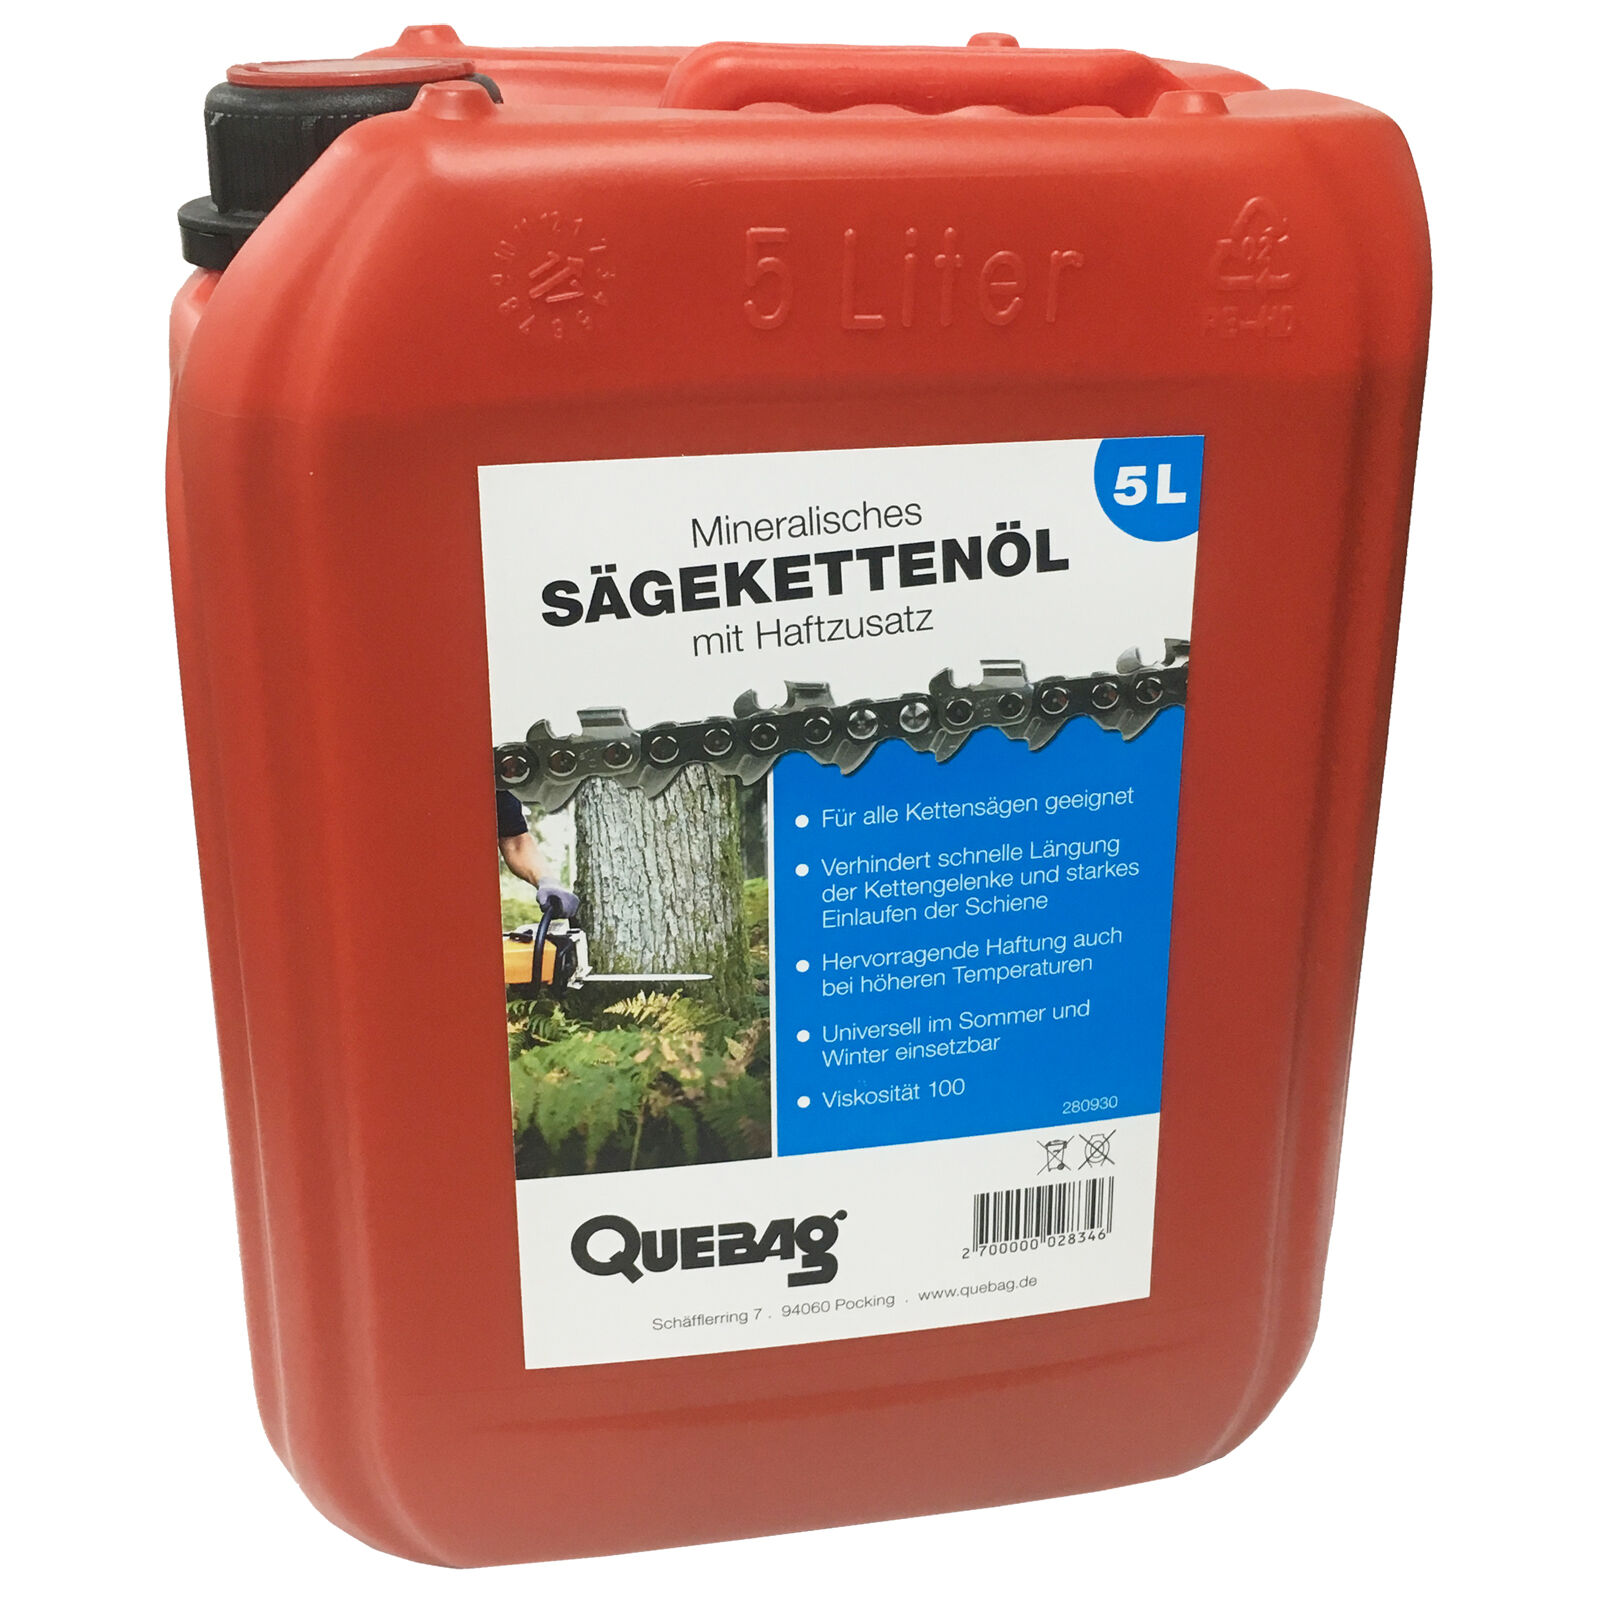 Quebag Sägekettenöl 5 l-Kanister ✔️ für 14,90 € ✔️ Quebag Agrar Shop